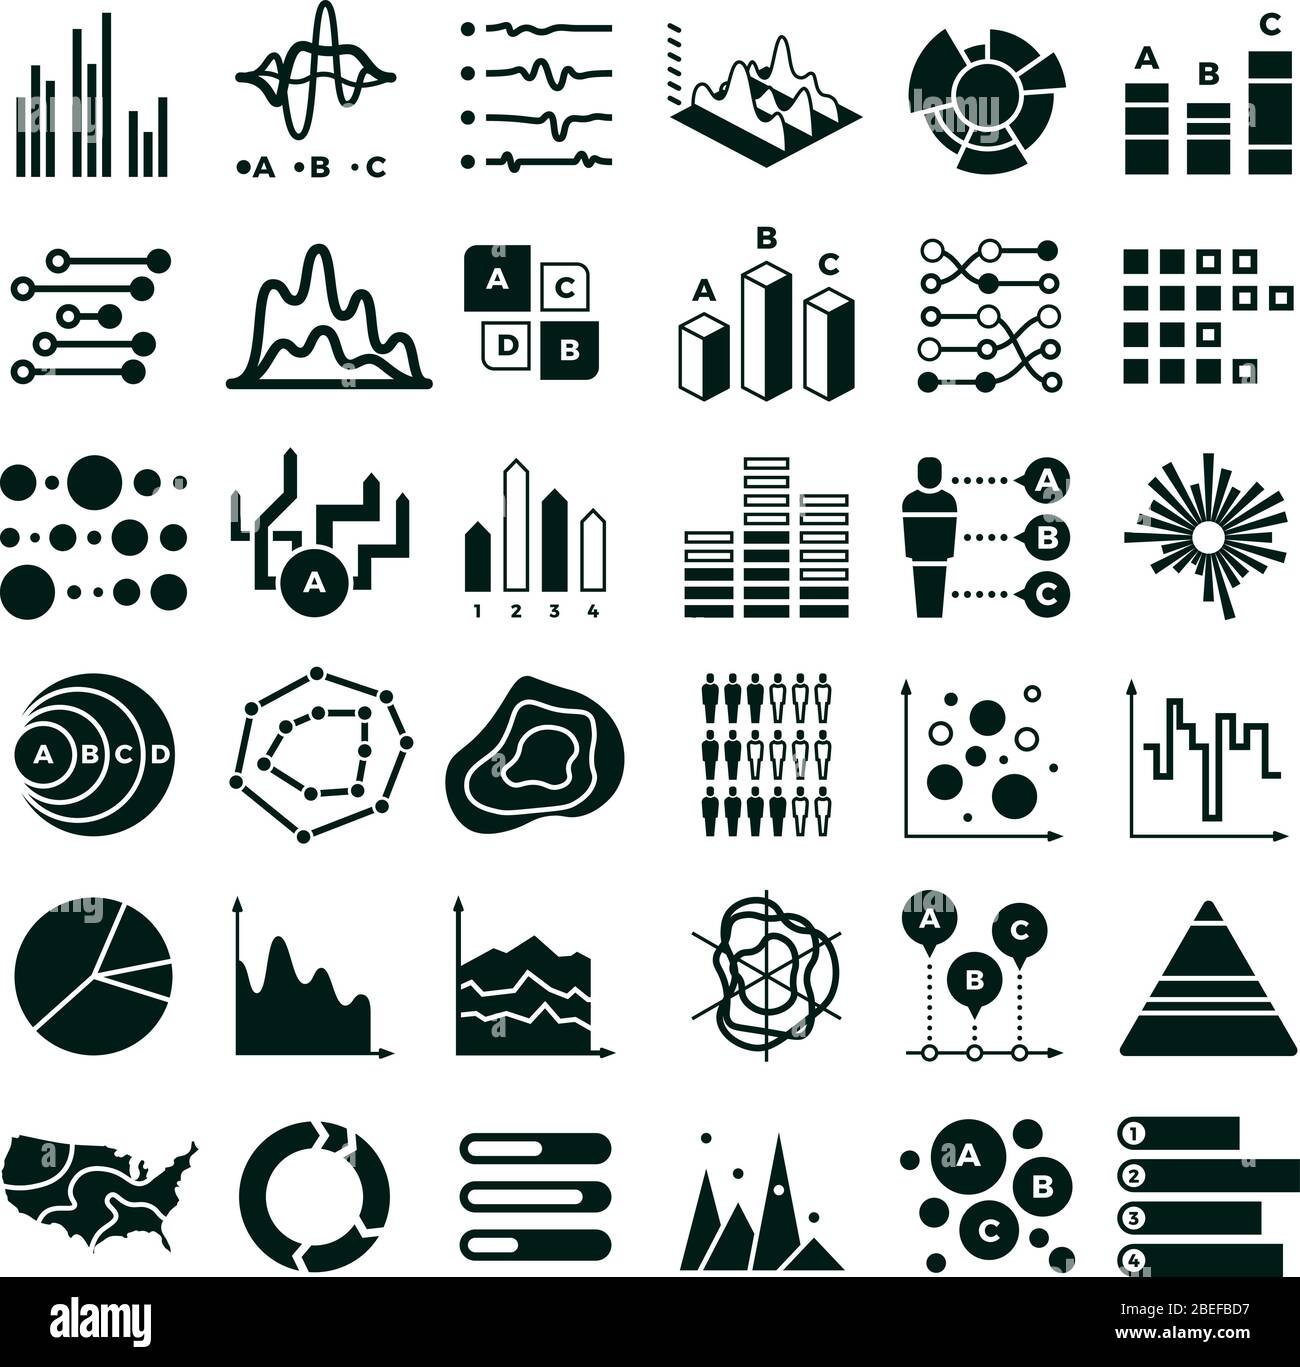 Icone di diagrammi e vettori infografici. Grafico dati aziendali e simboli grafici. Illustrazione di grafici e dati, diagrammi e informazioni sulla carta Illustrazione Vettoriale